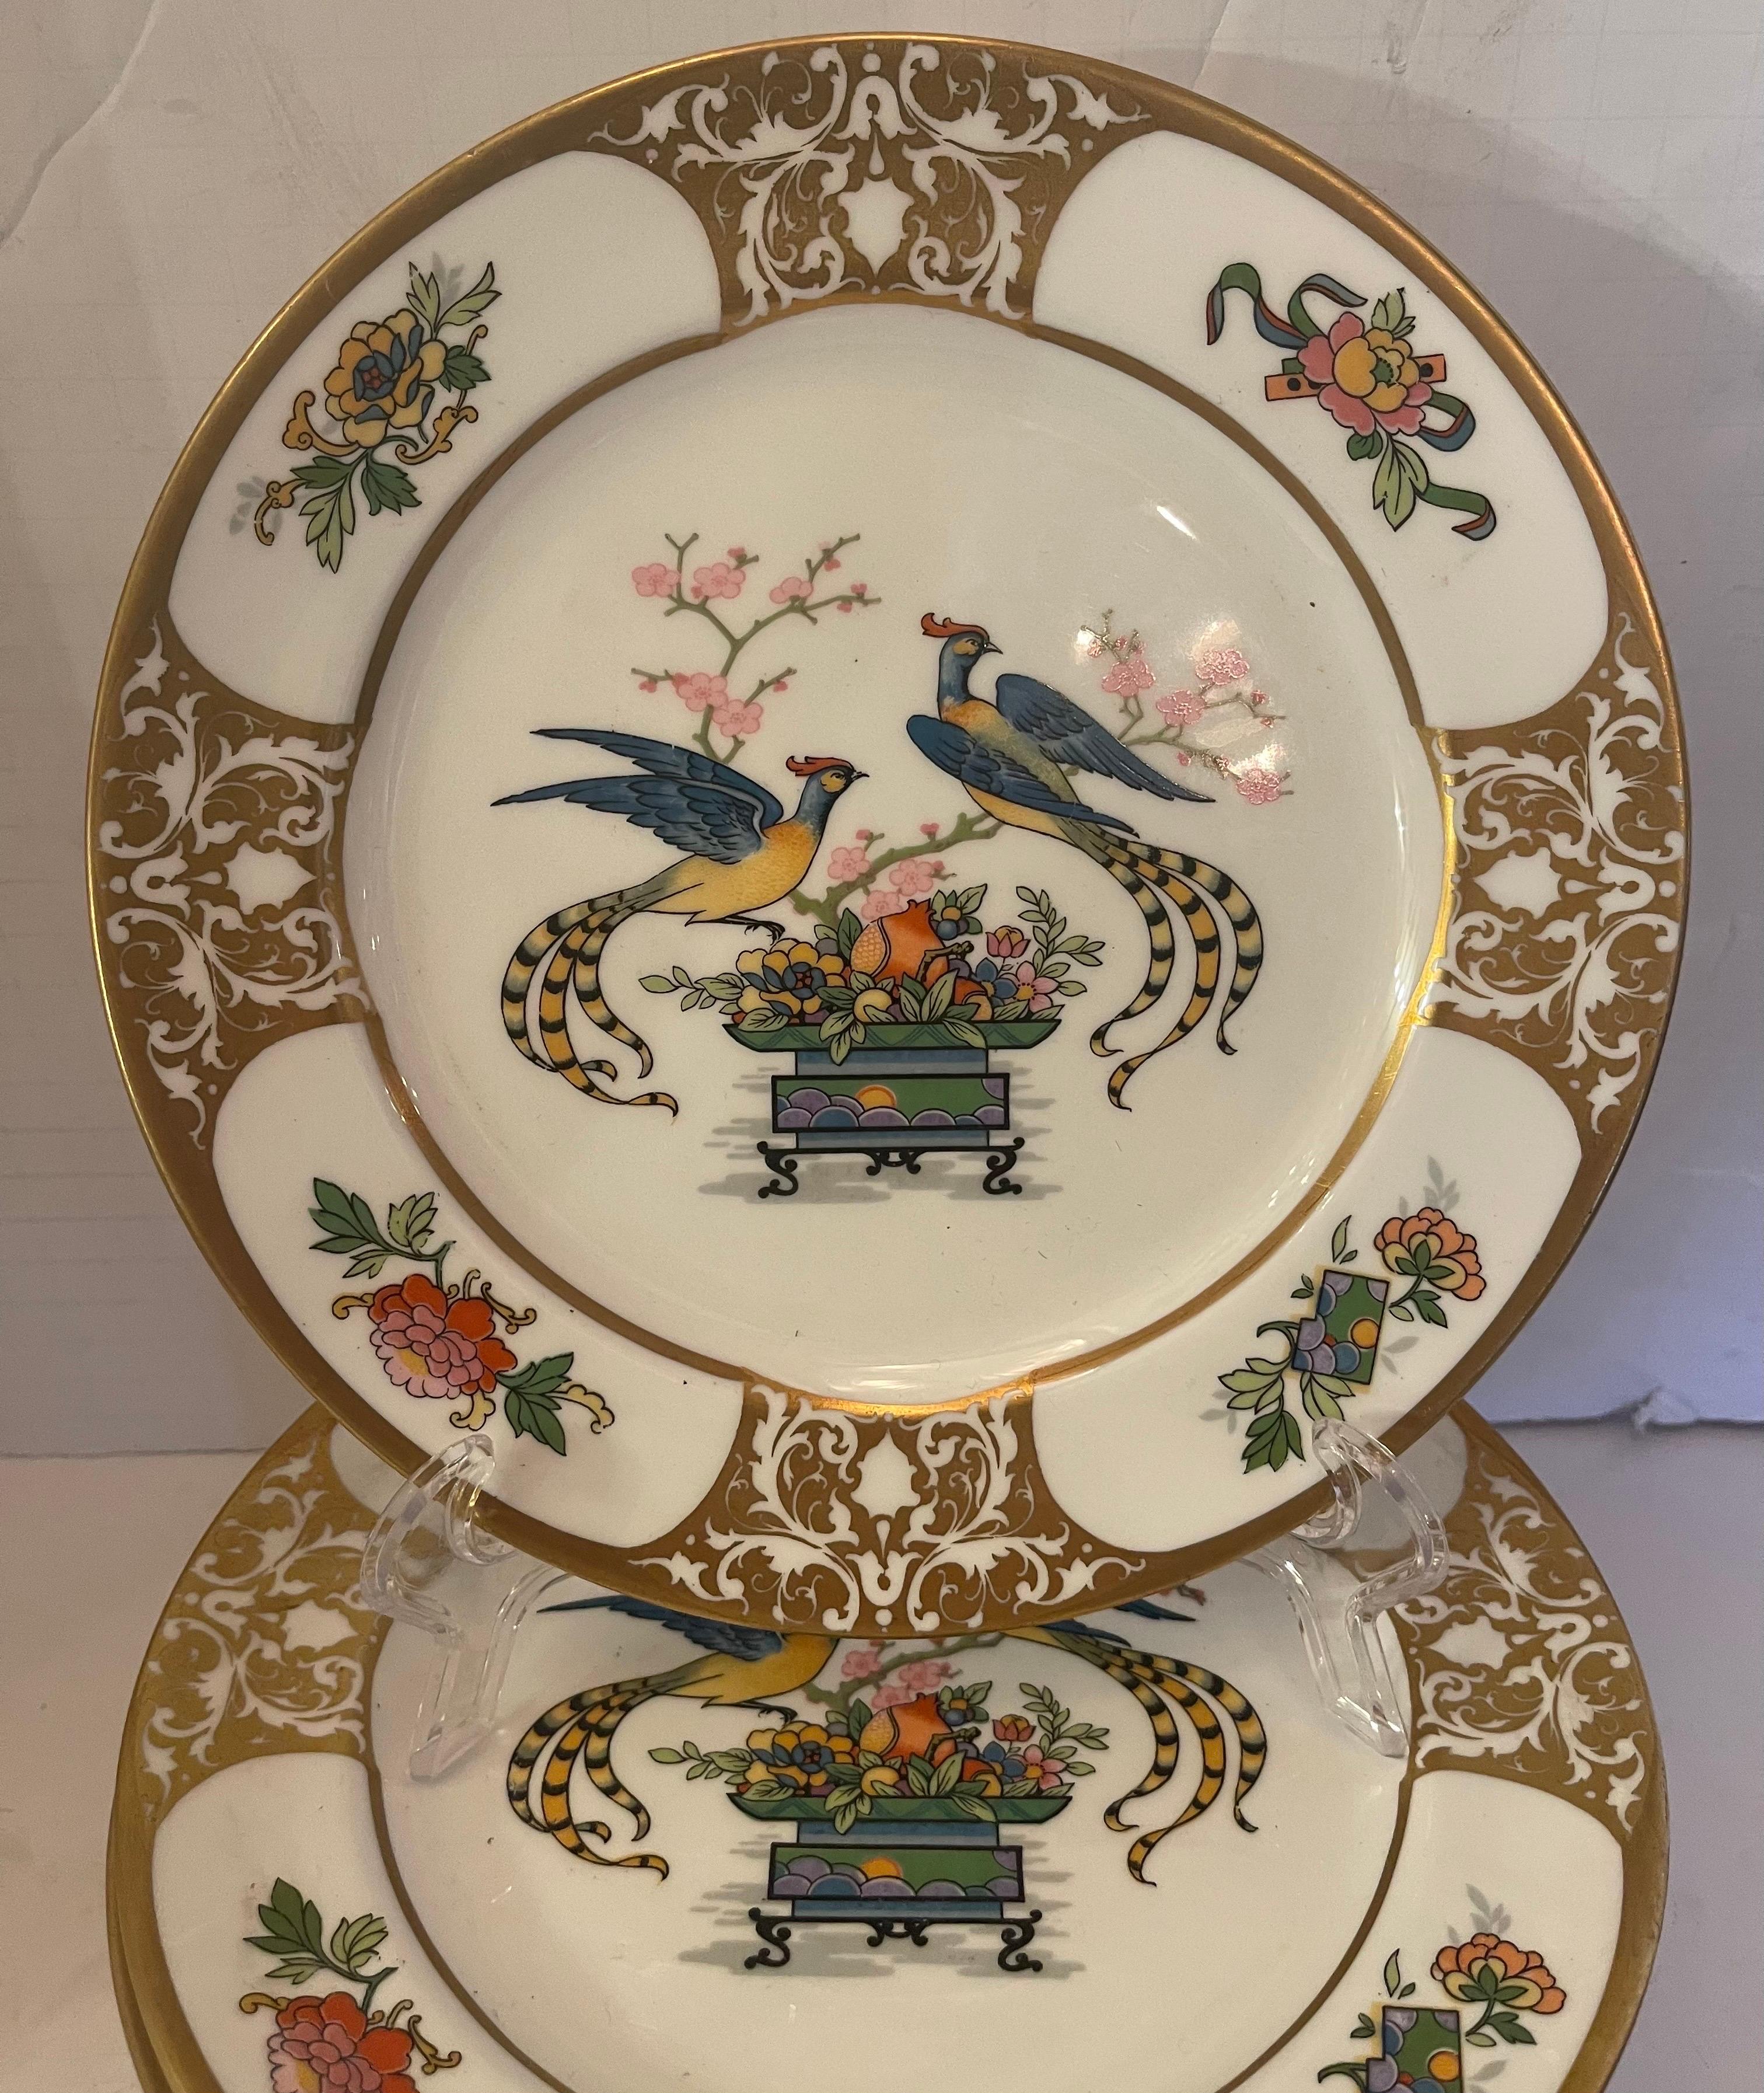 Merveilleux service de 12 assiettes à déjeuner et à dessert en porcelaine peinte à la main de style chinois.